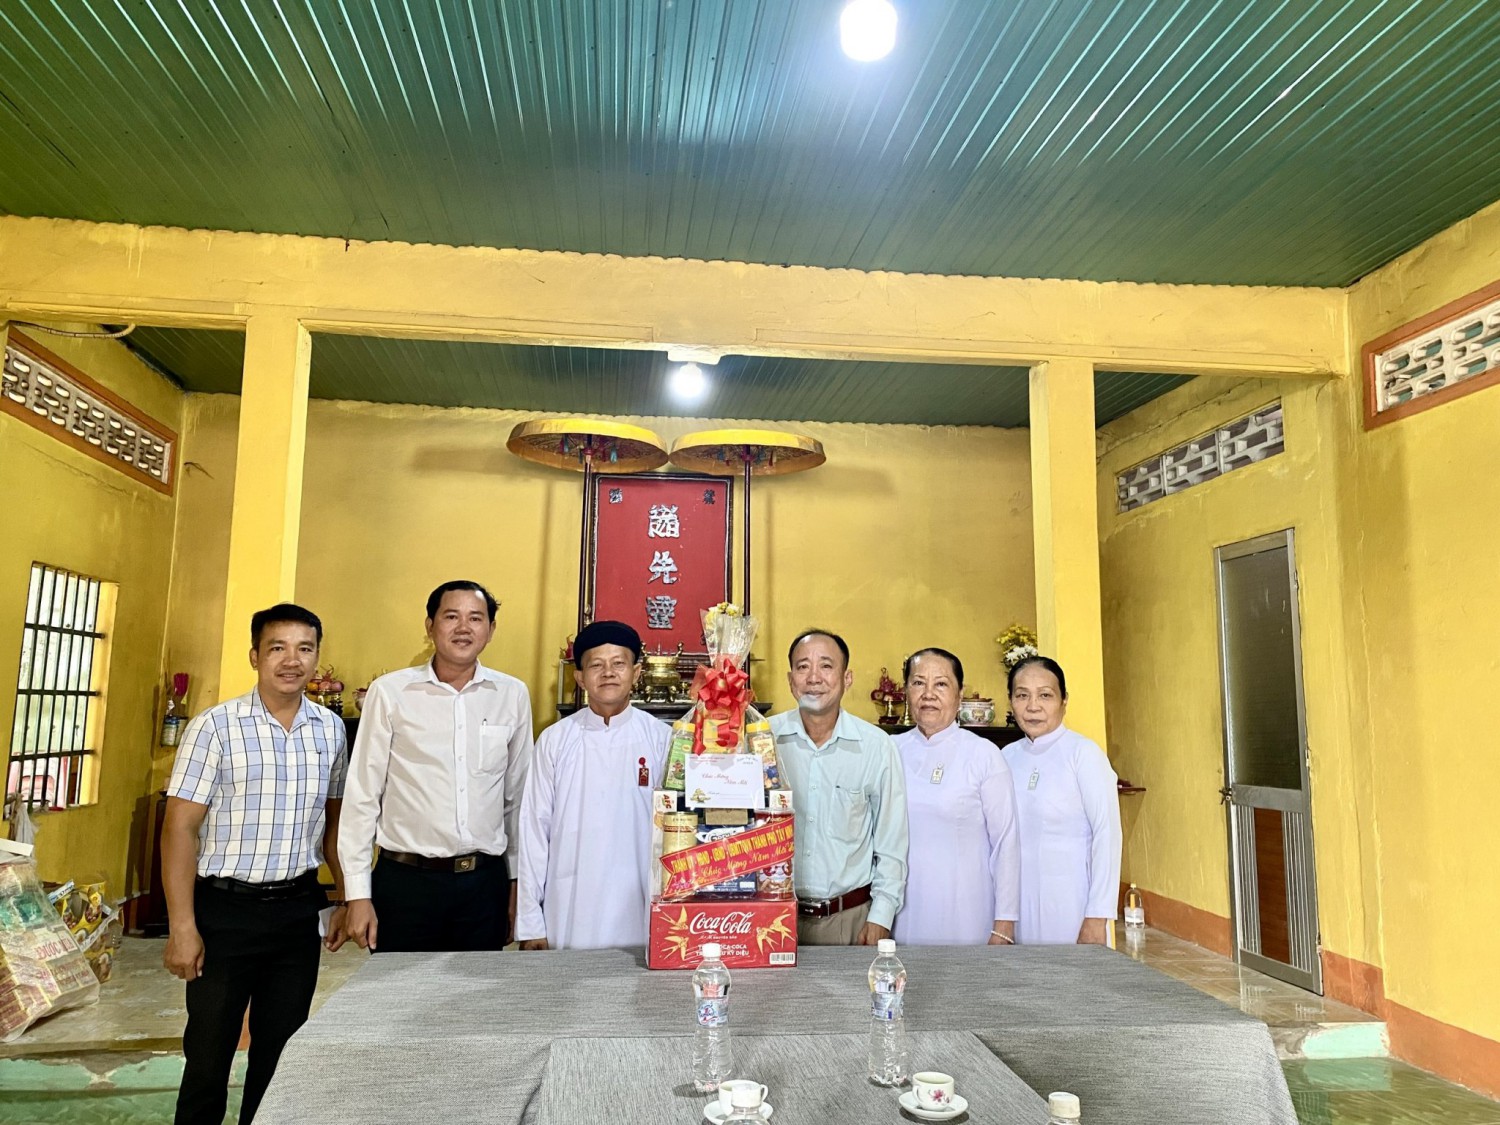 Tổ chức đến thăm hỏi, chúc Tết các cơ sỡ tín ngưỡng tôn giáo Cao đài, già làng dân tộc Tà Mun trên địa bàn phường Ninh Thạnh nhân dịp xuân Quý Mão năm 2023.